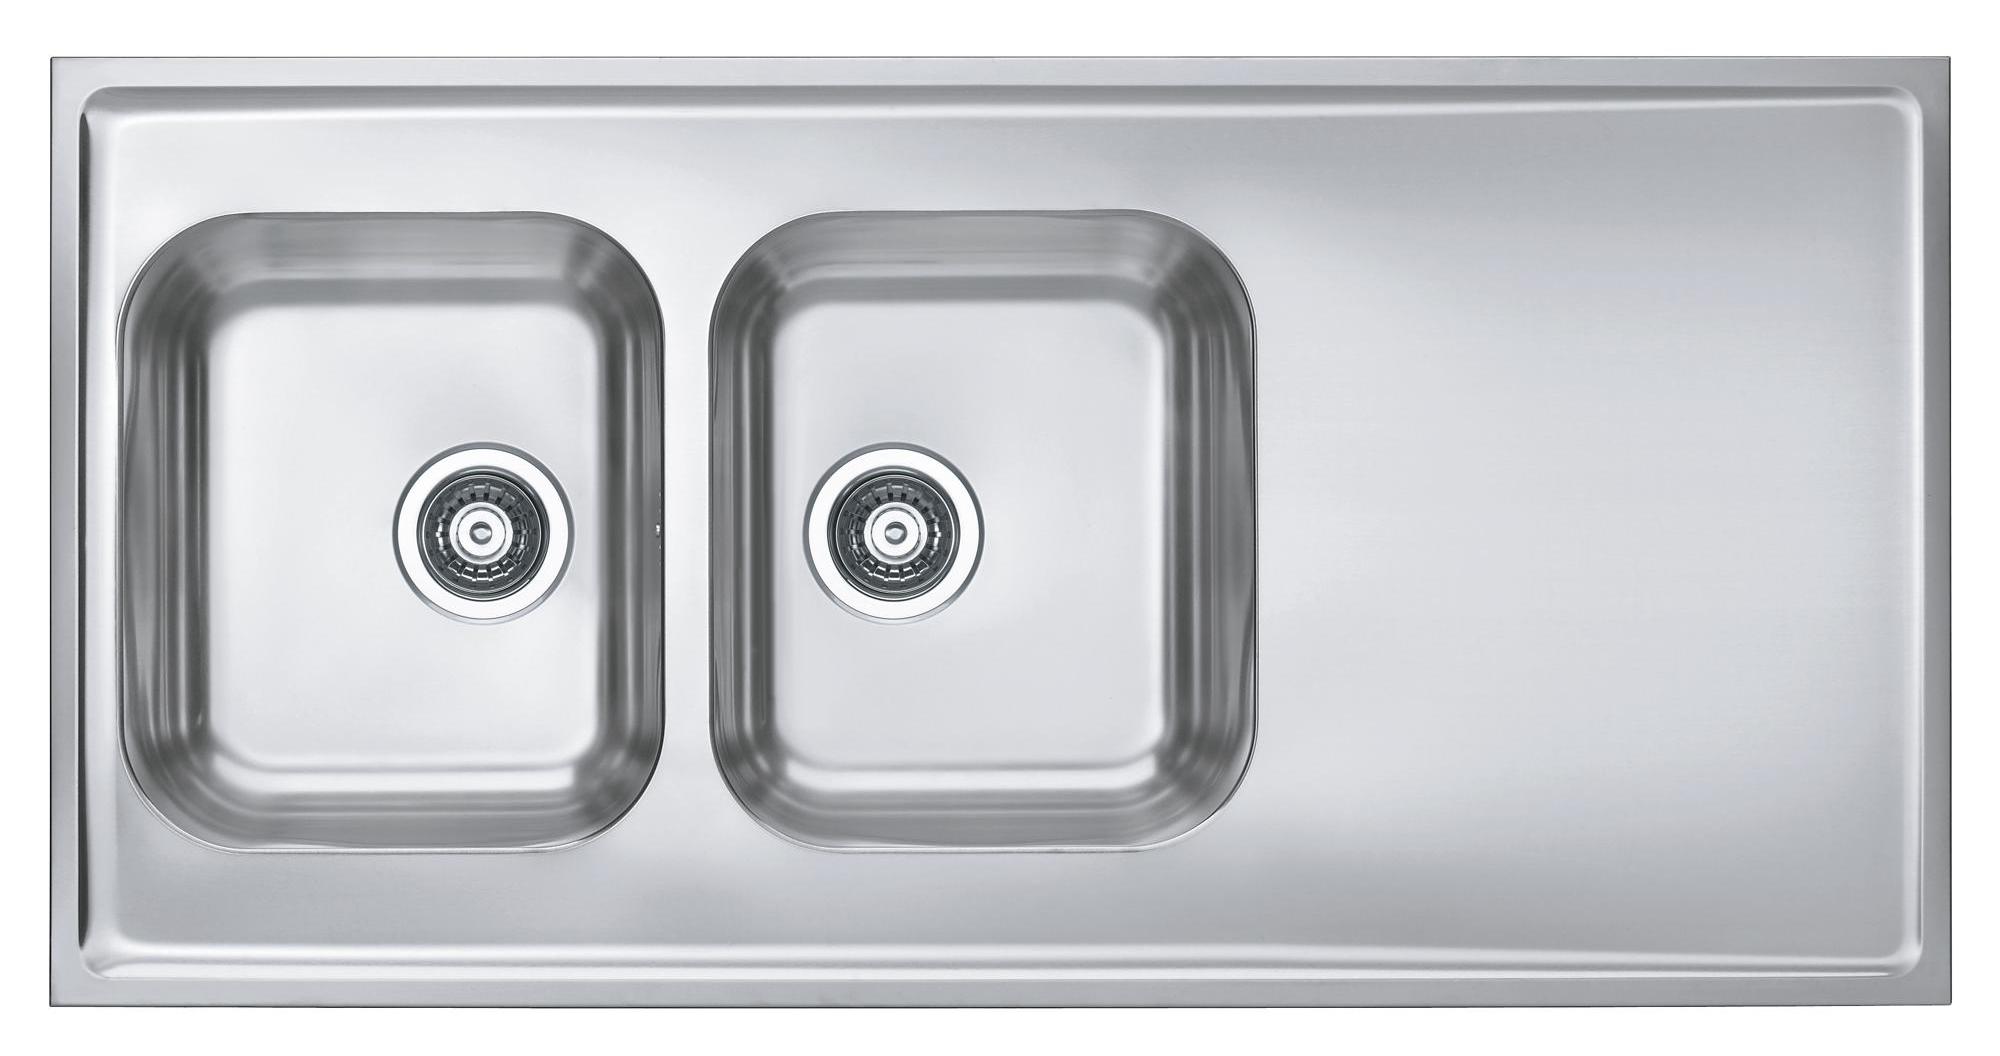 Кухонная мойка Alveus Classic Pro 100 1130474 120 см нержавеющая сталь